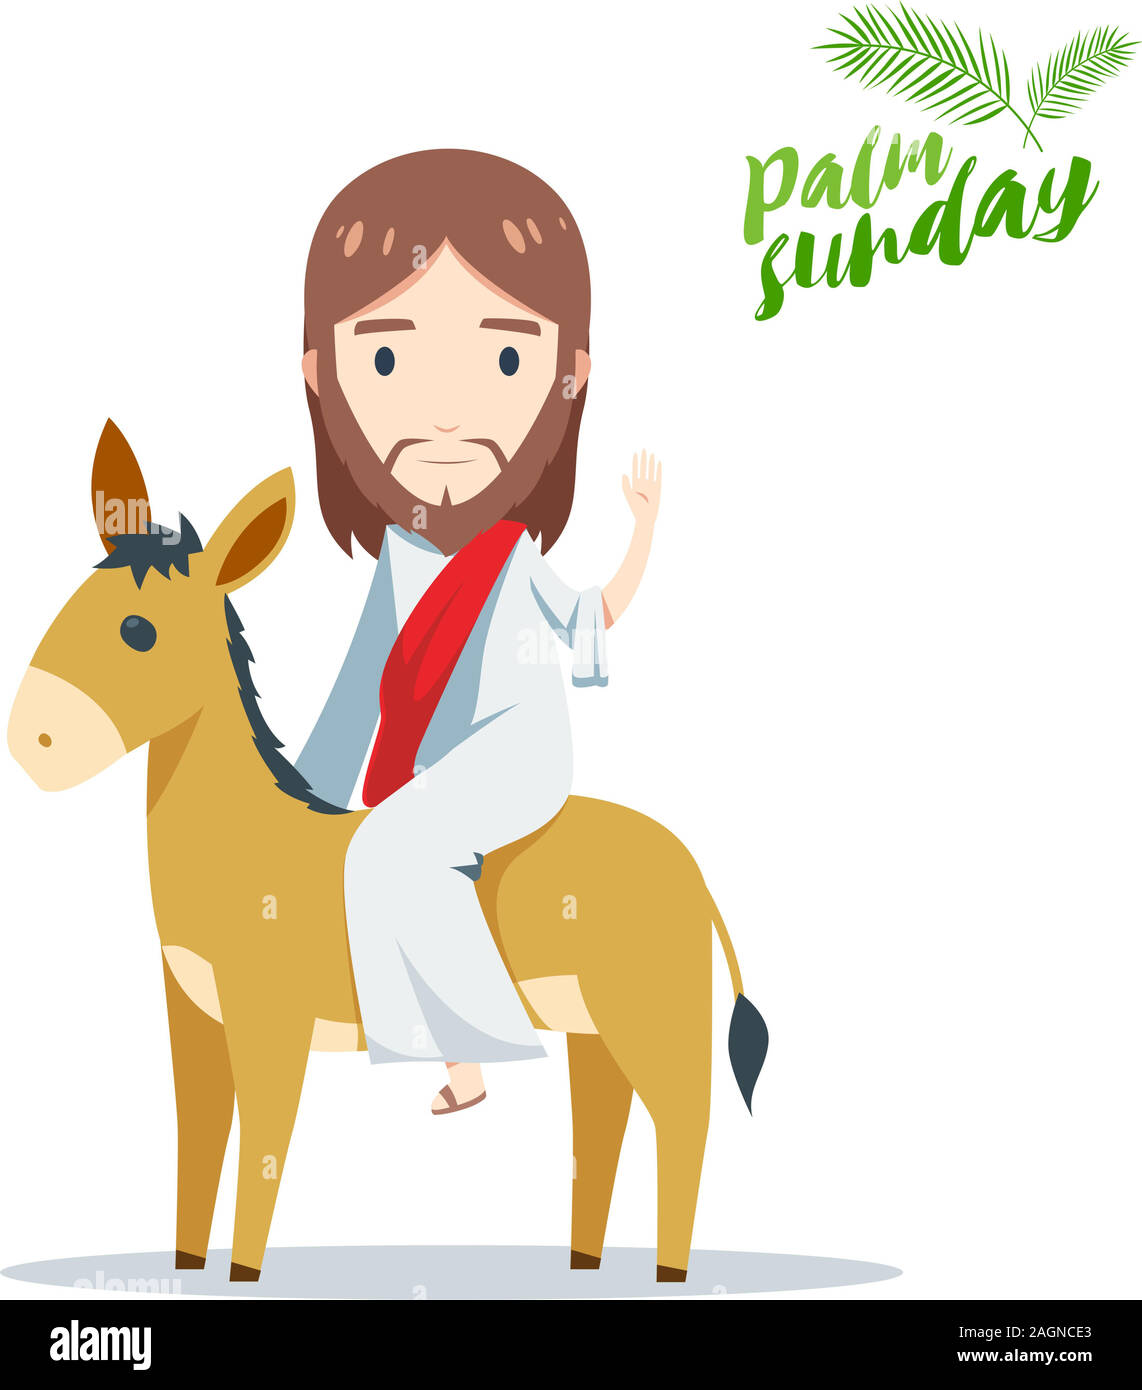 Palm Sunday Hosanna Jesus on a Donkey Tiny Sunday School Stickers